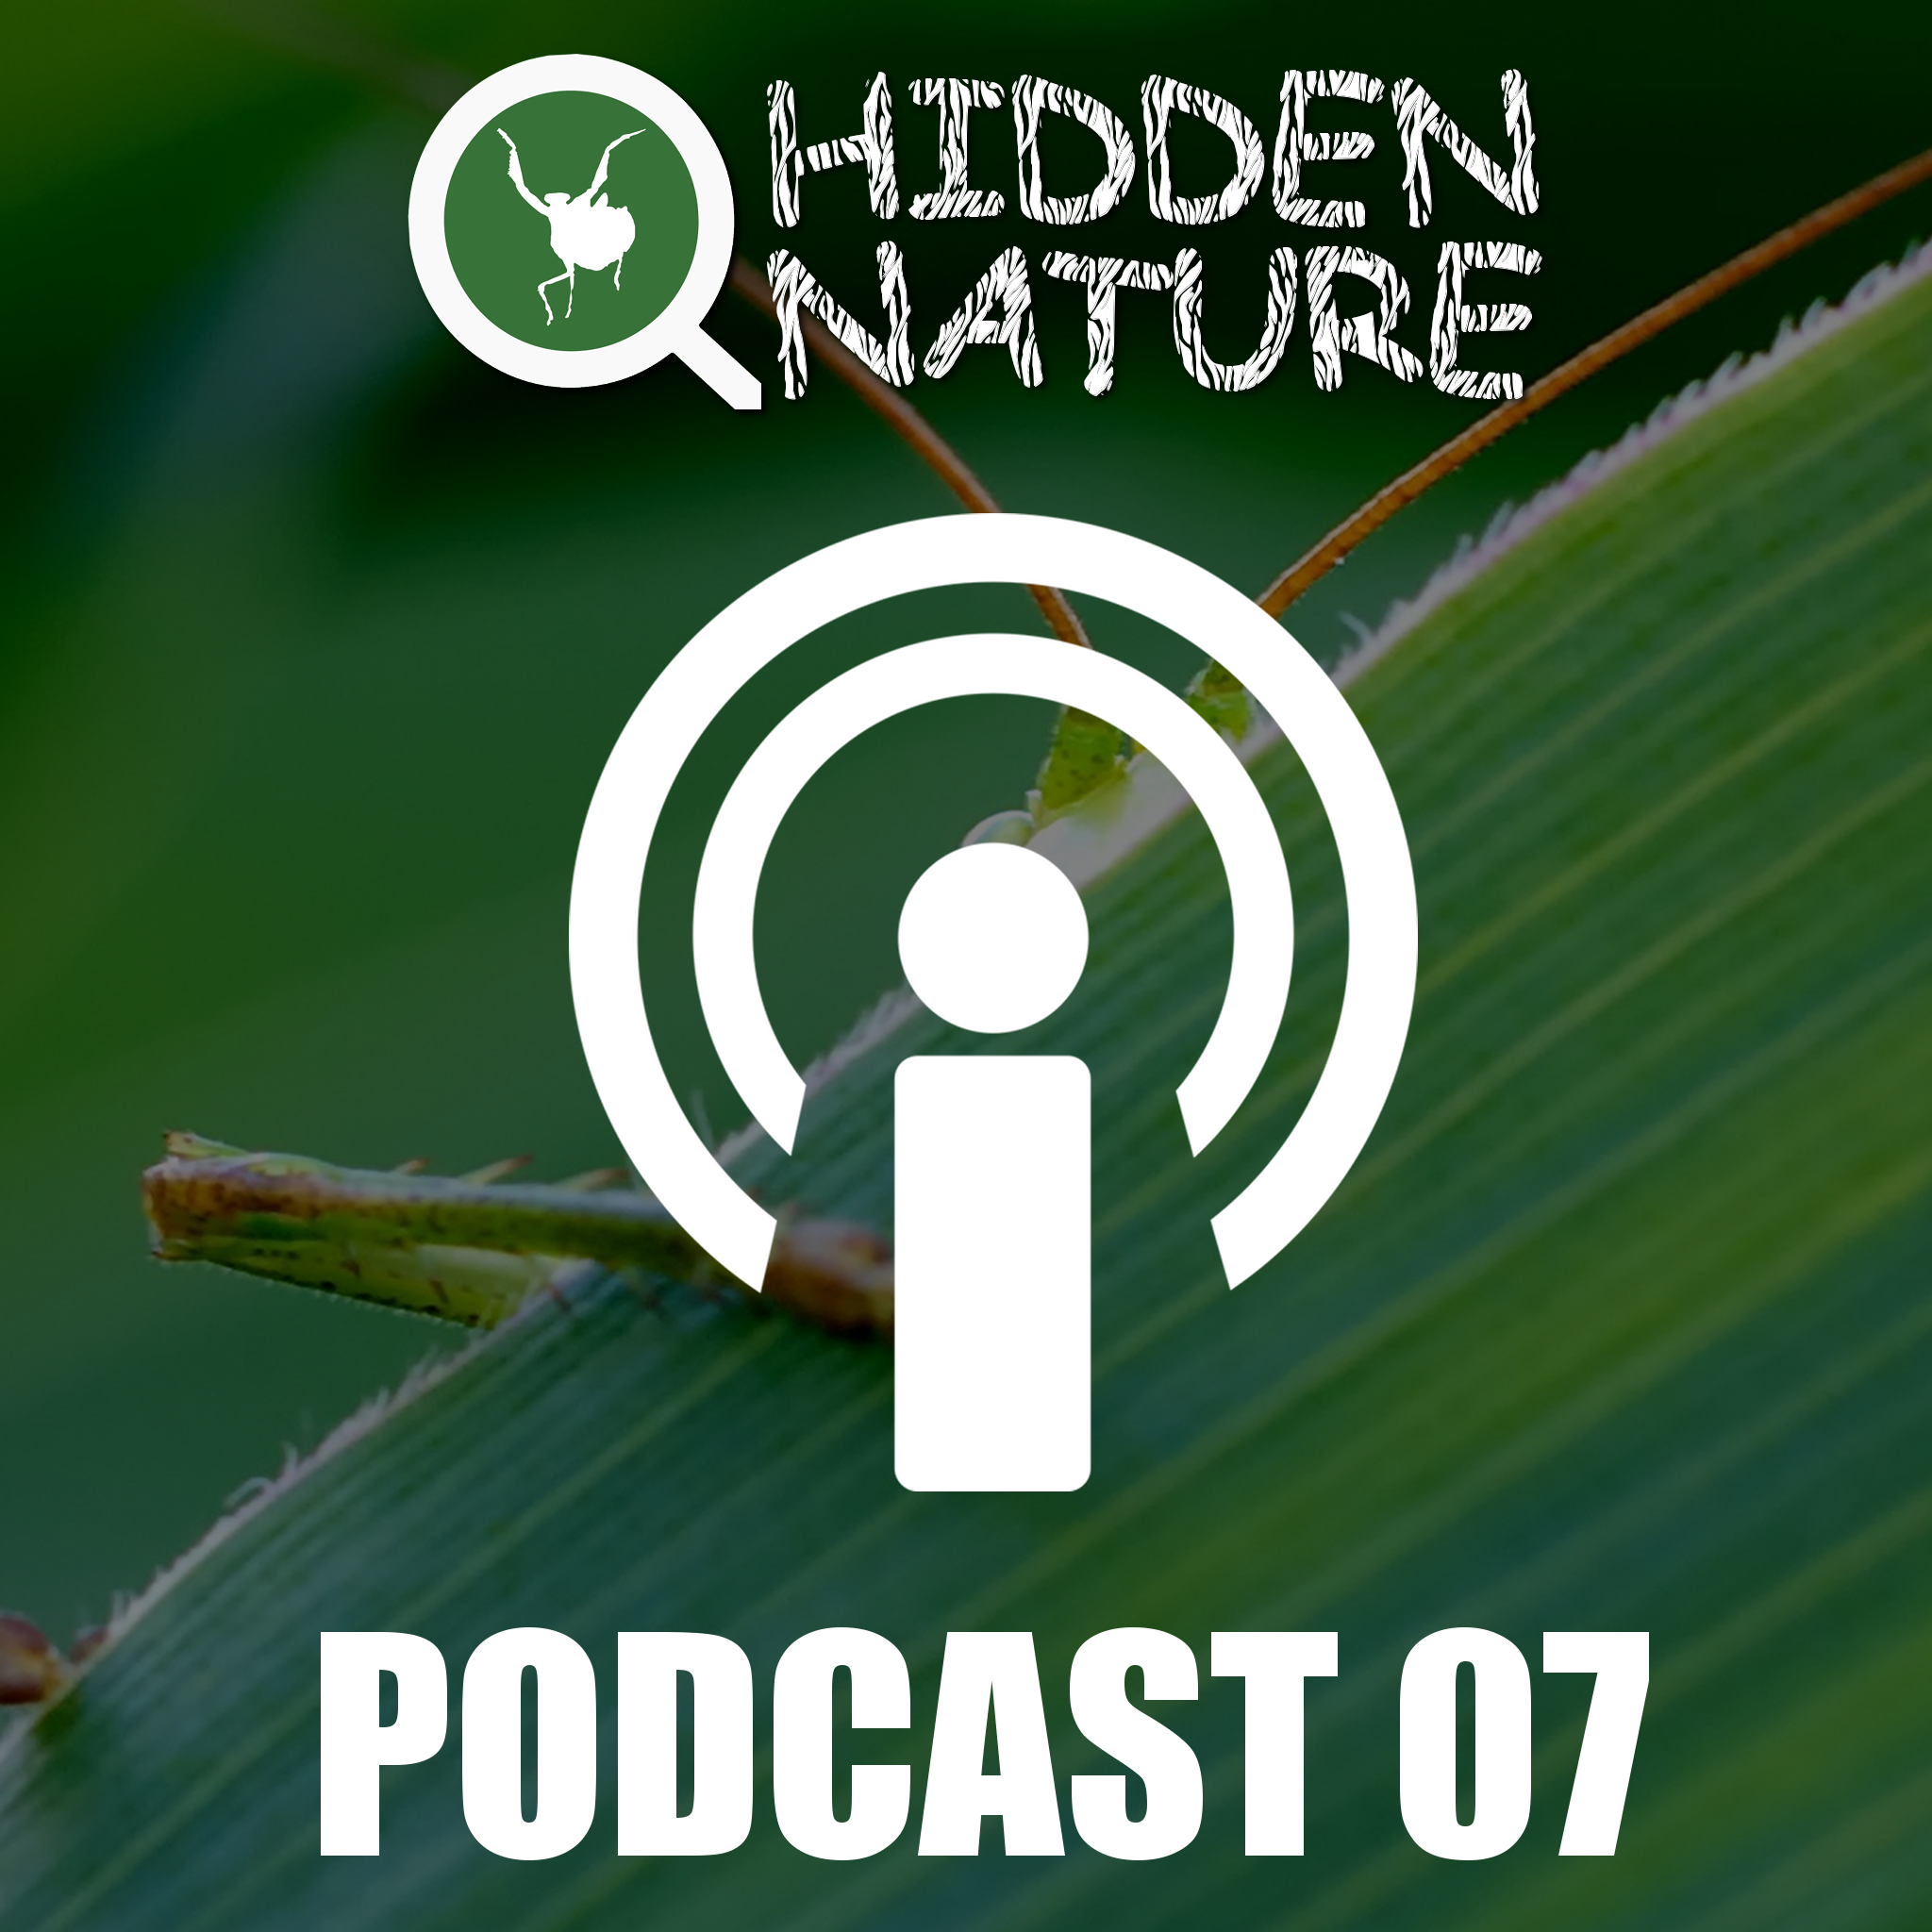 07 – Podcasts Hidden Nature – Epigenética